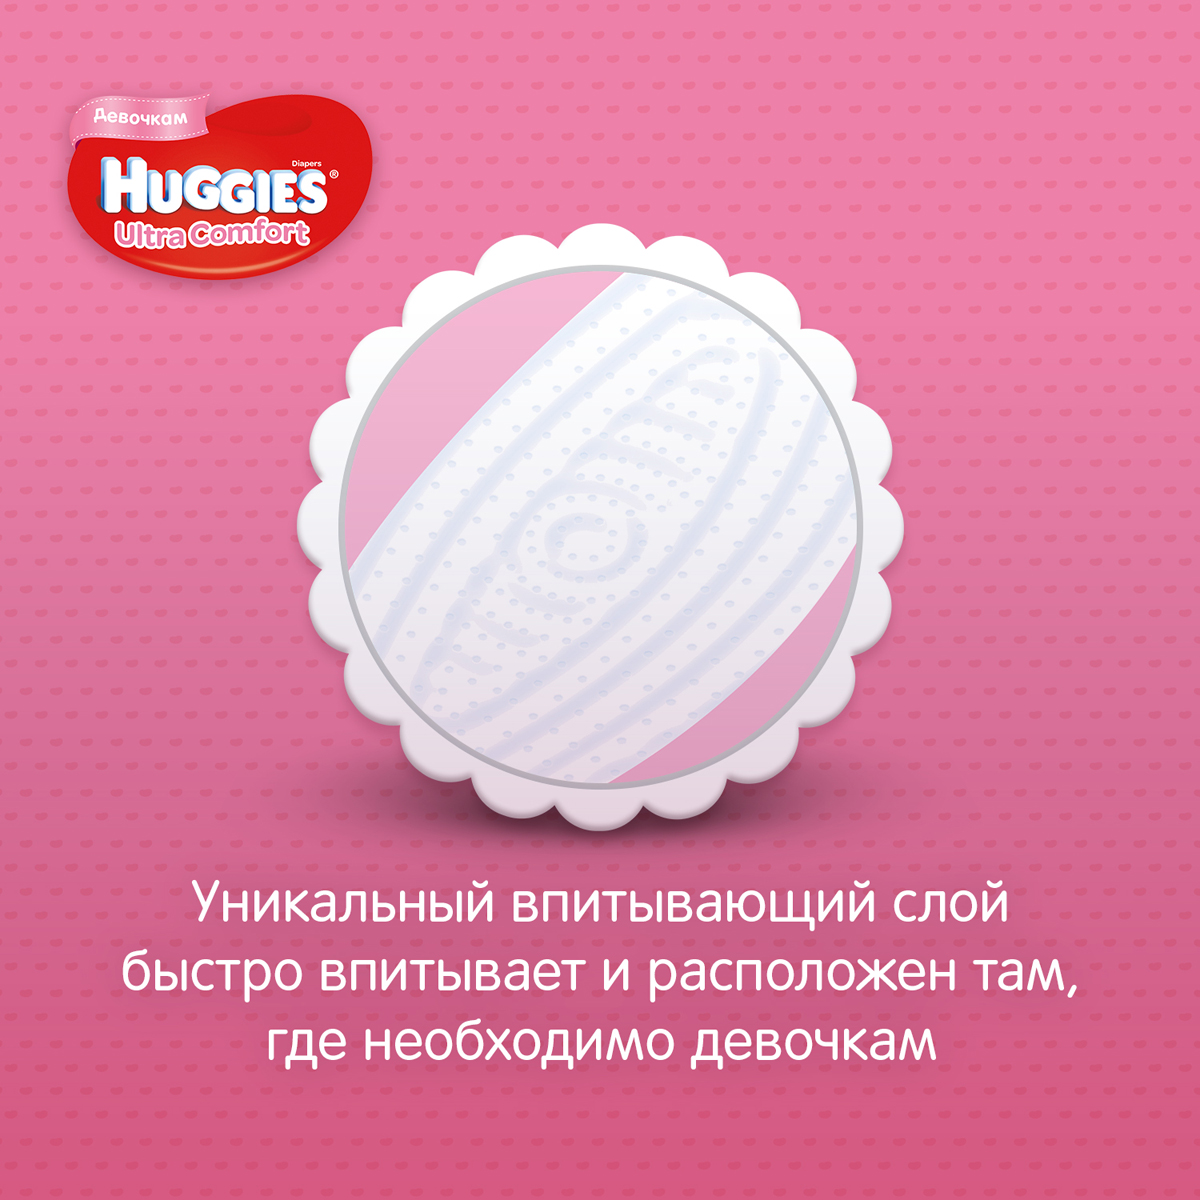 фото Huggies Подгузники для девочек Ultra Comfort 8-14 кг (размер 4) 19 шт